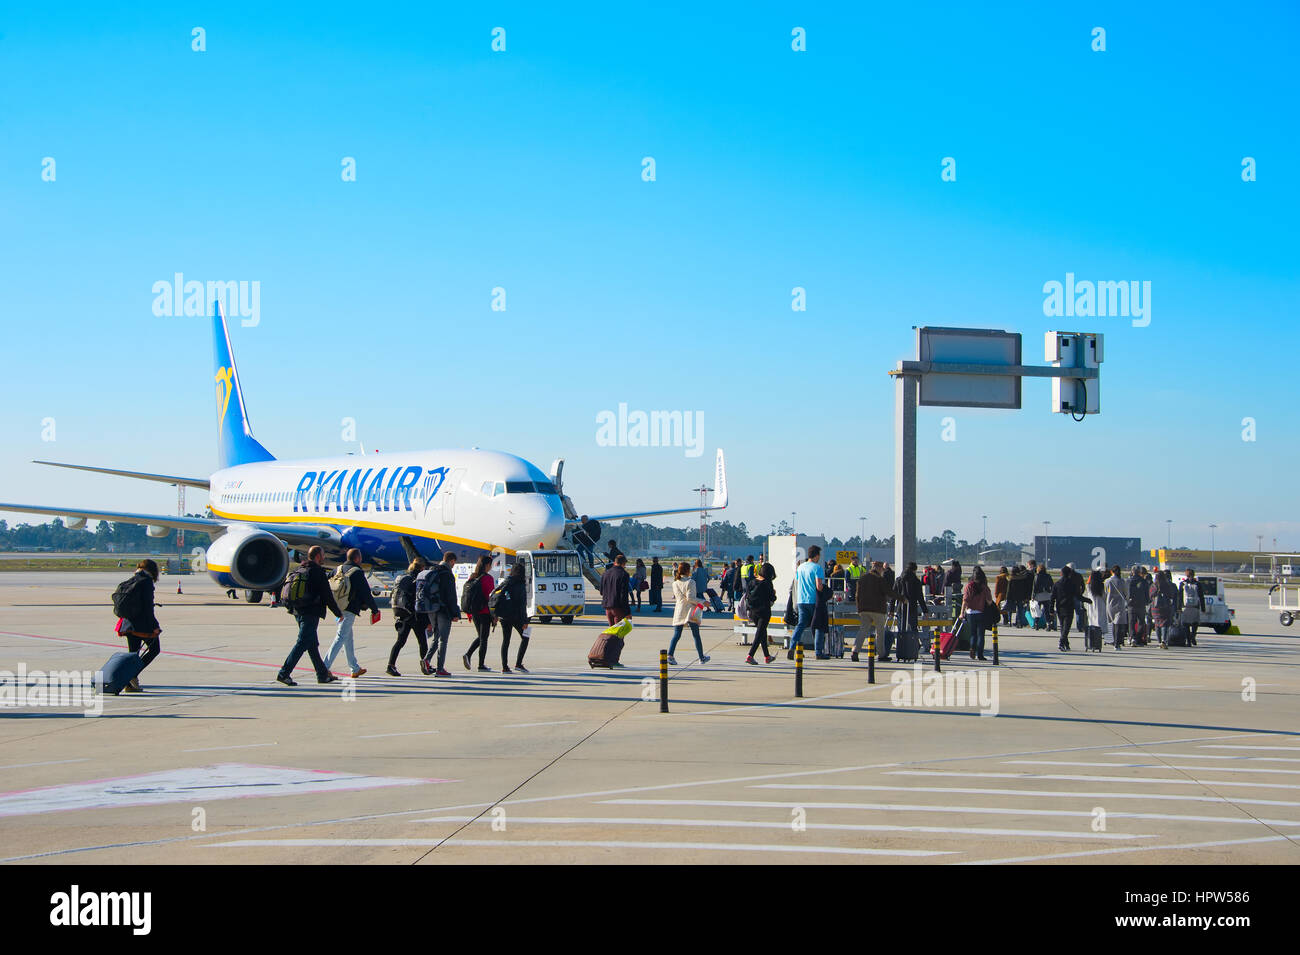 PORTO, PORTUGAL - DEC 25, 2016: Los pasajeros de embarque aiplane Ryanair en el Aeropuerto de Francisco Sa Carneiro. El es actualmente el segundo aeropuerto más transitado de t Foto de stock